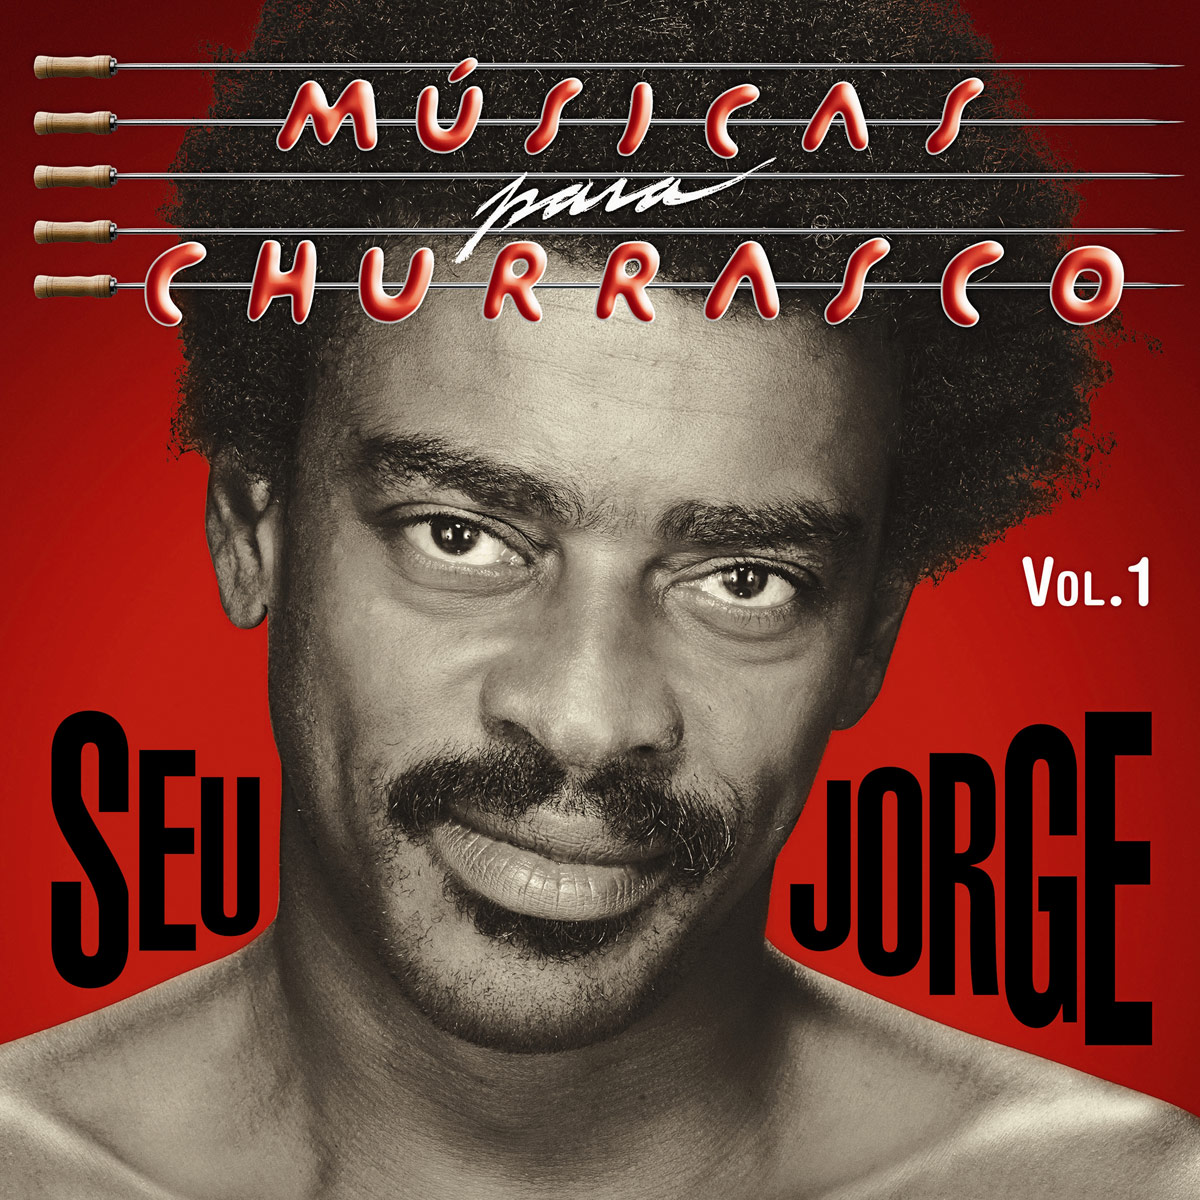 baixar_seu_jorge_musicas_para_churrasco_vol_1_e_2